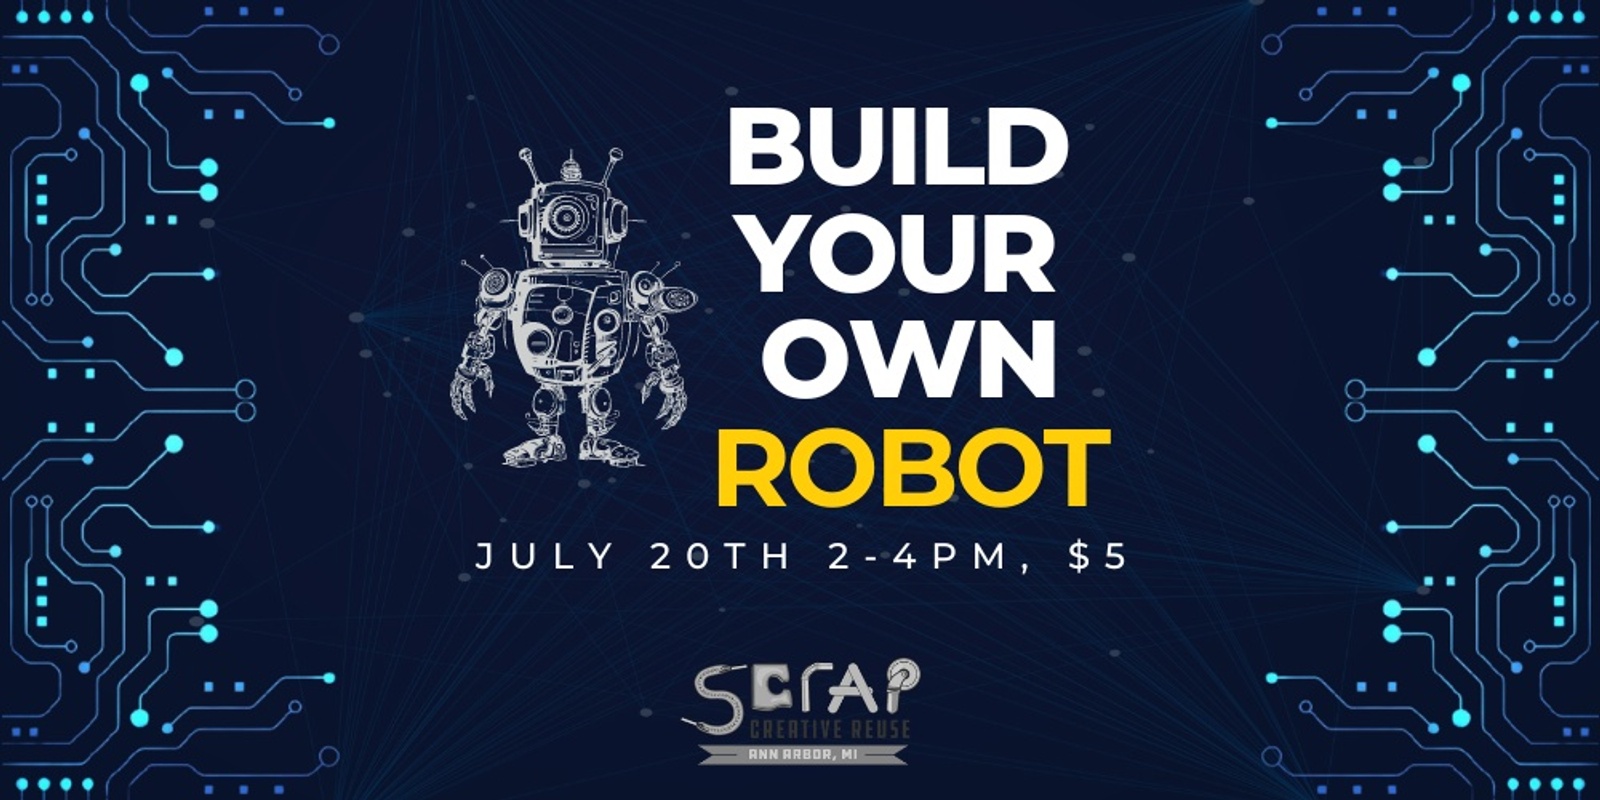 Banner image for Let's Make a Robot